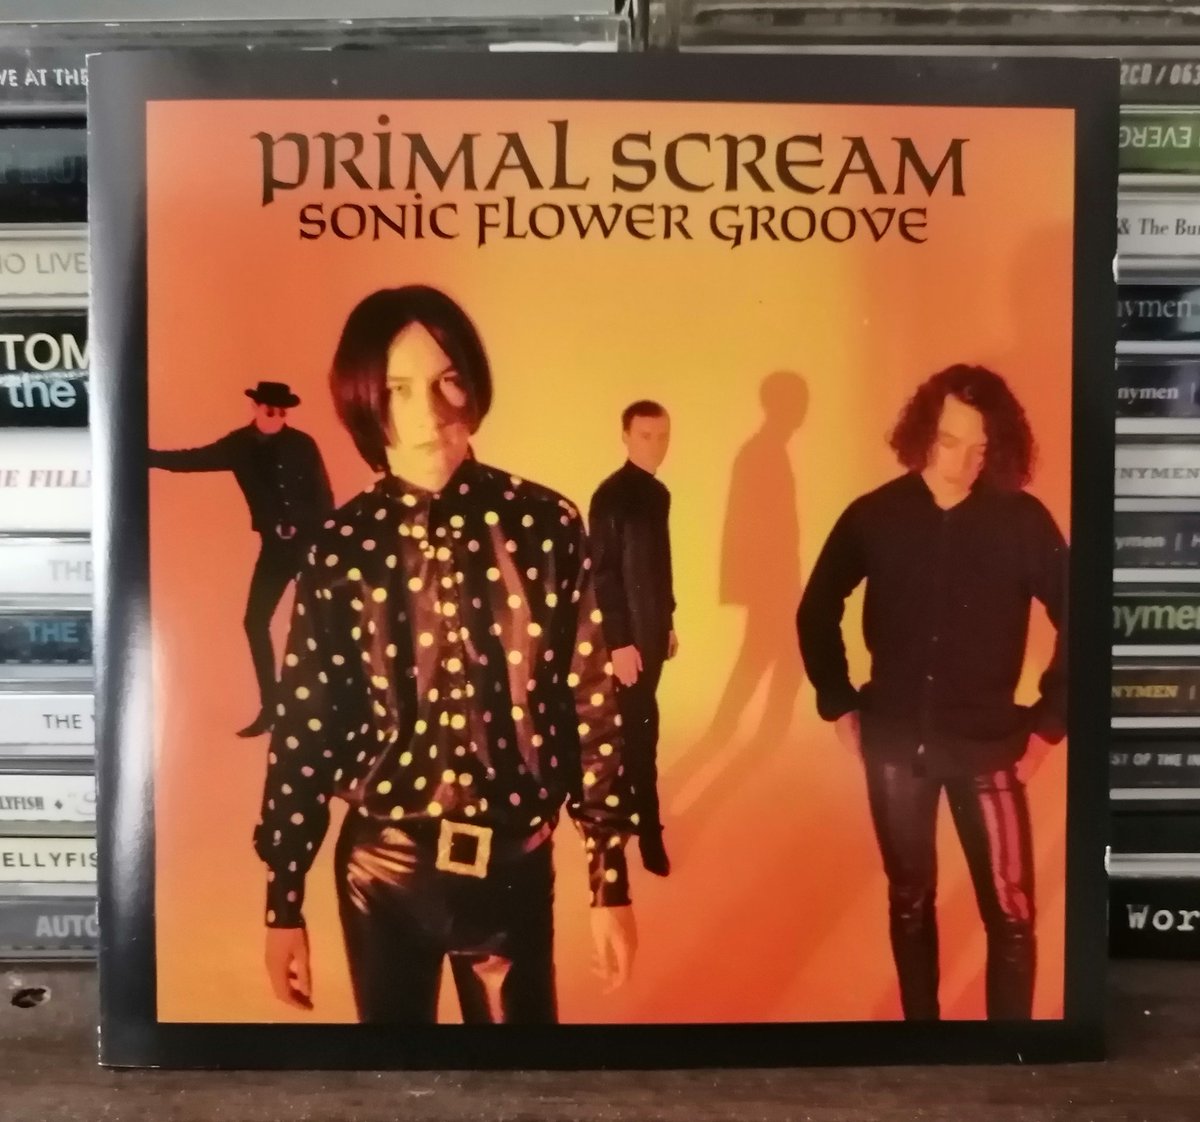 Afternoon listen.

#sonicflowergroove #primalscream